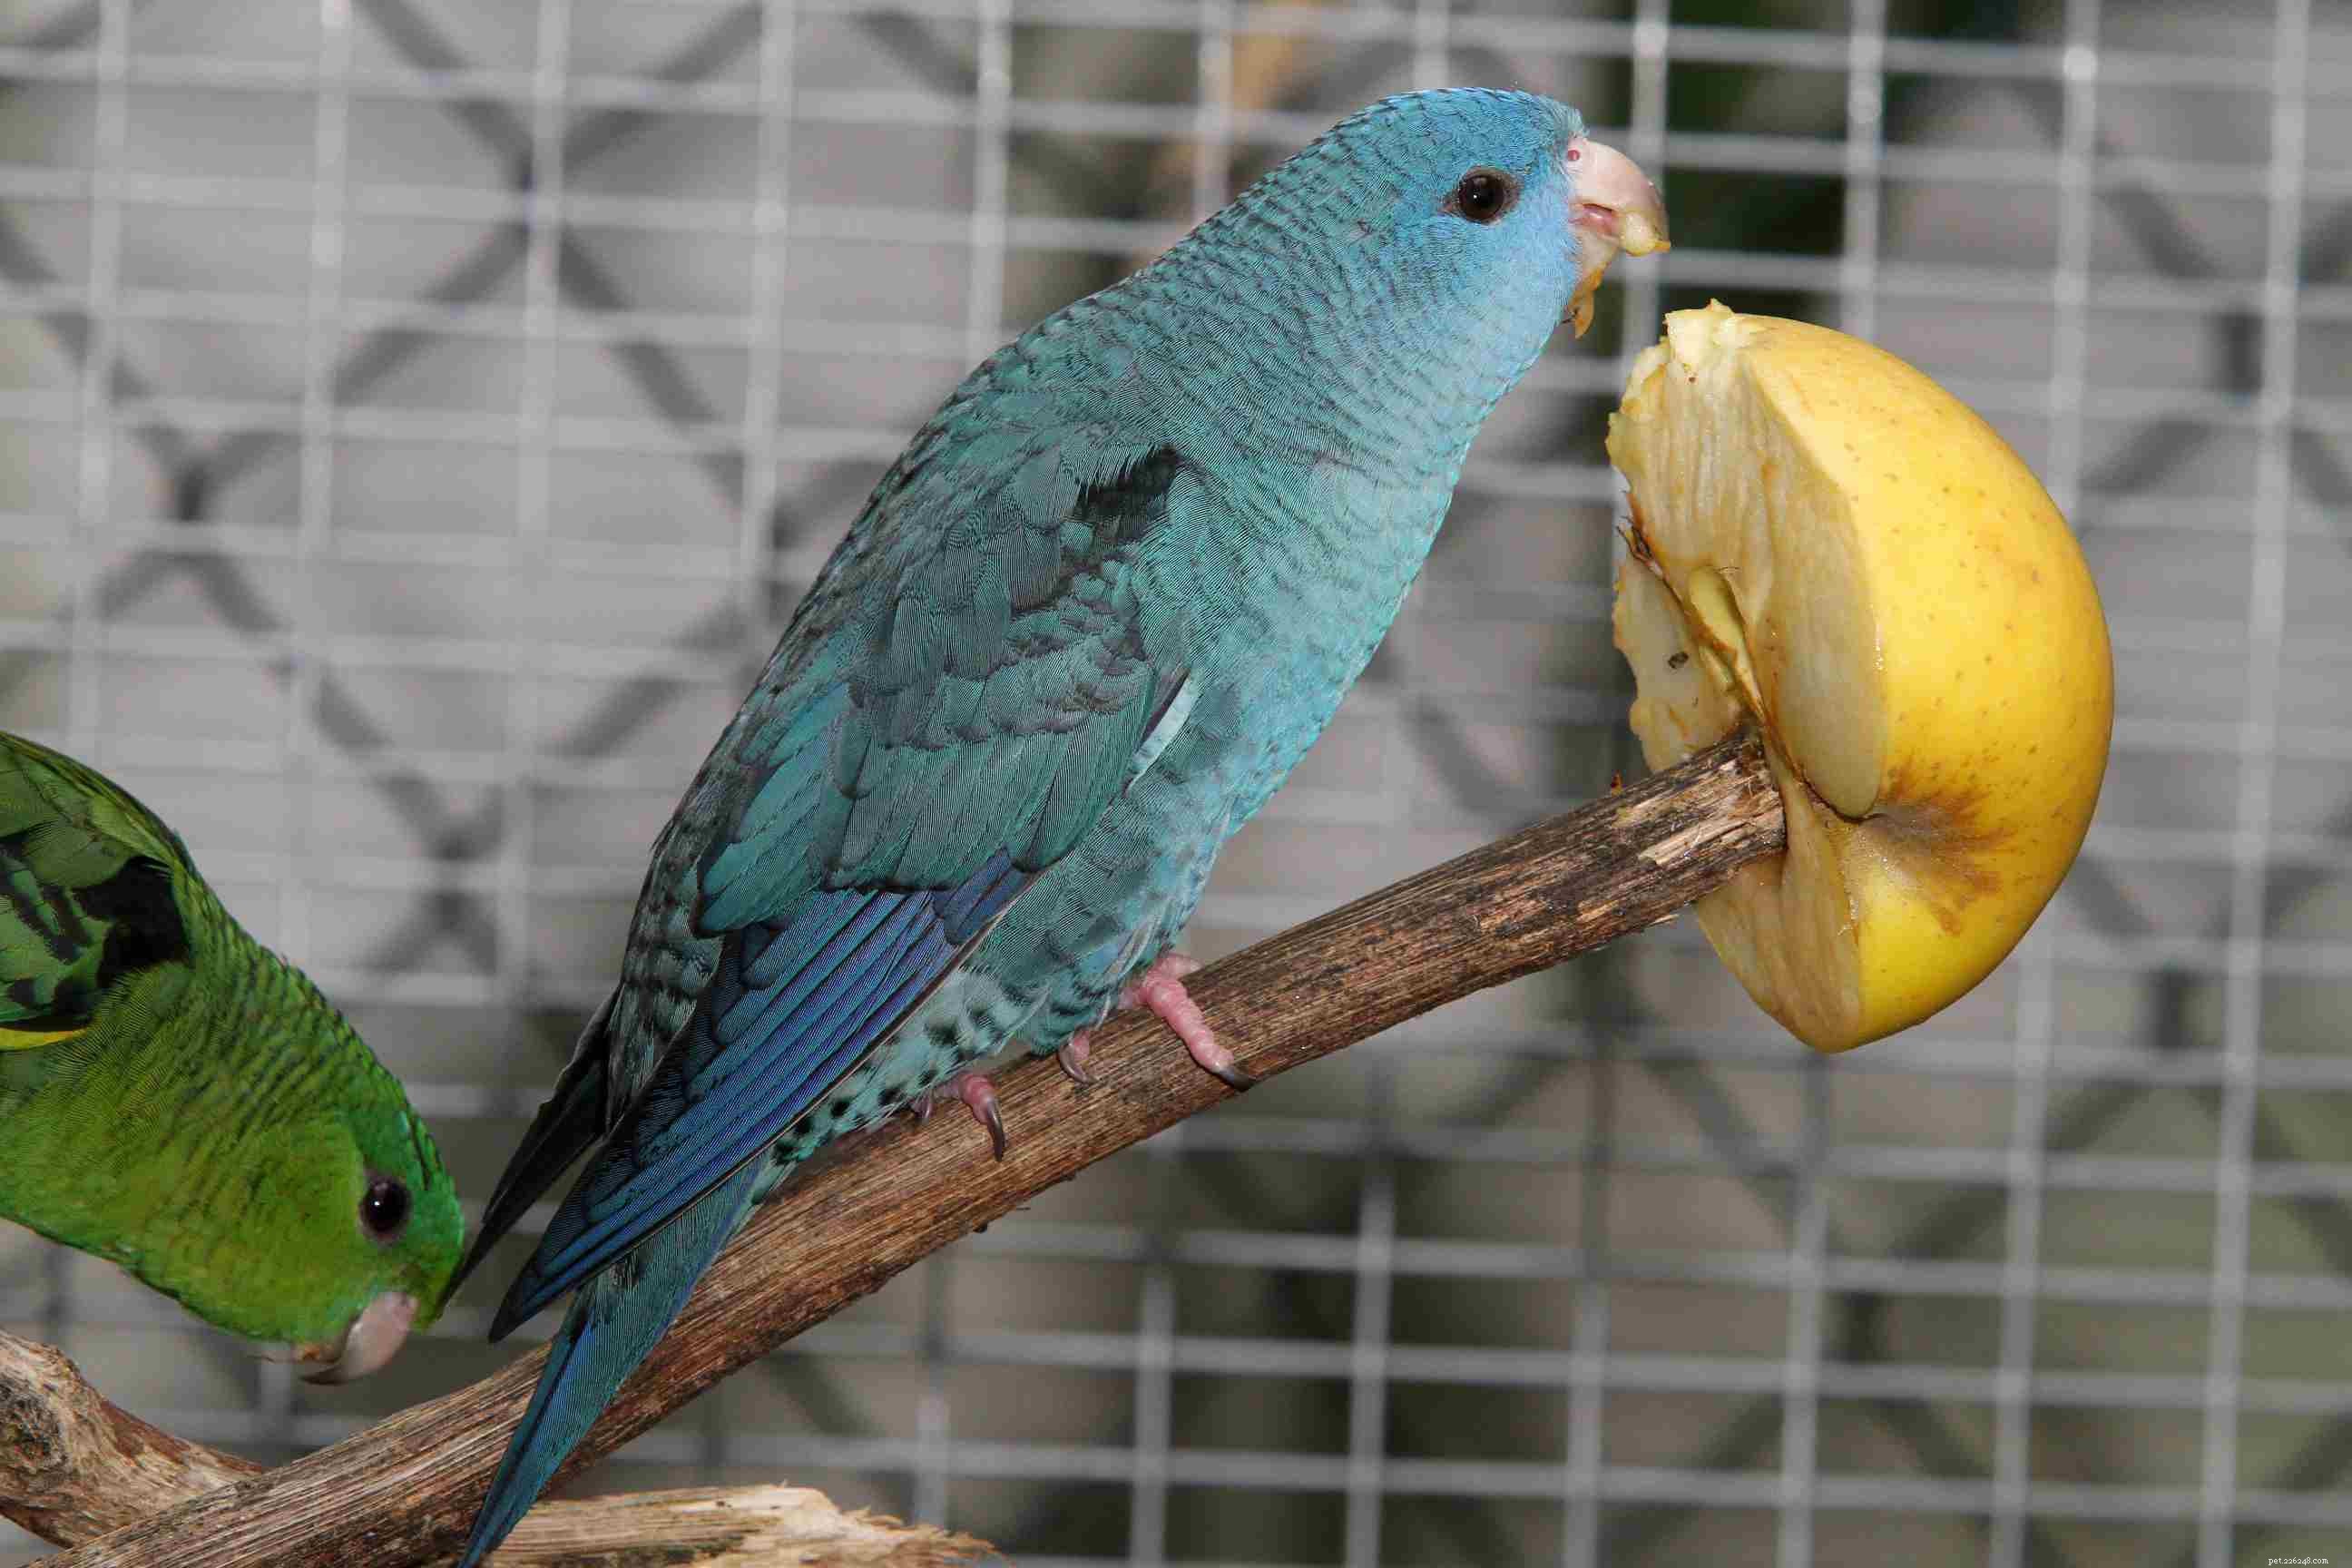 Barevné mutace u papoušků a jiných ptáků